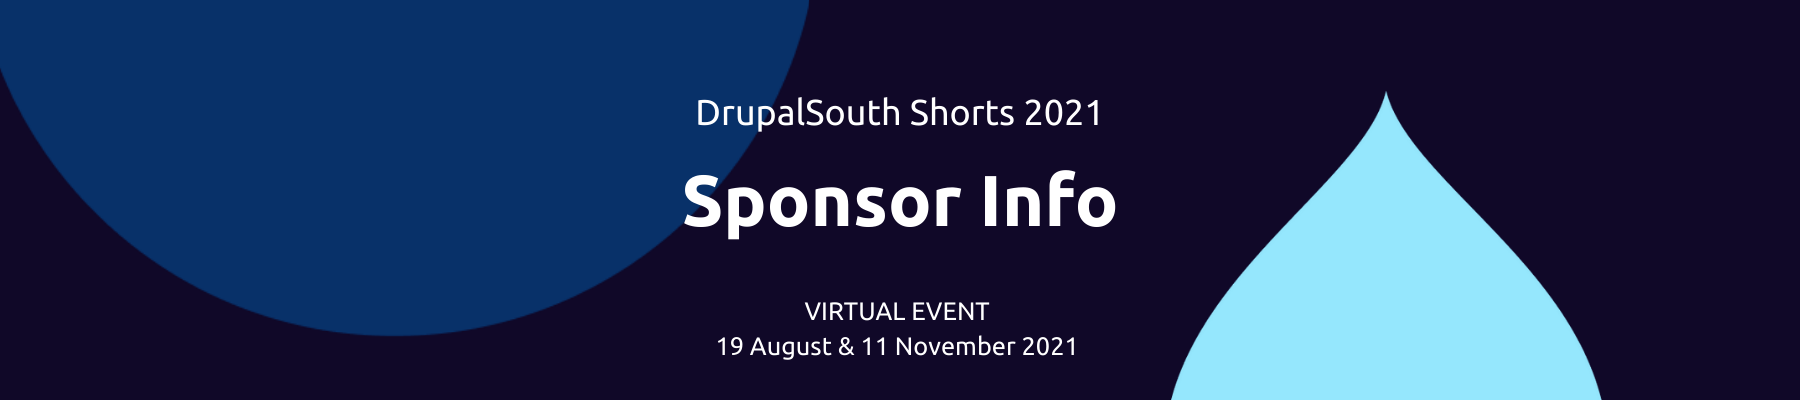 DrupalSouth Shorts Sponsor Info Banner